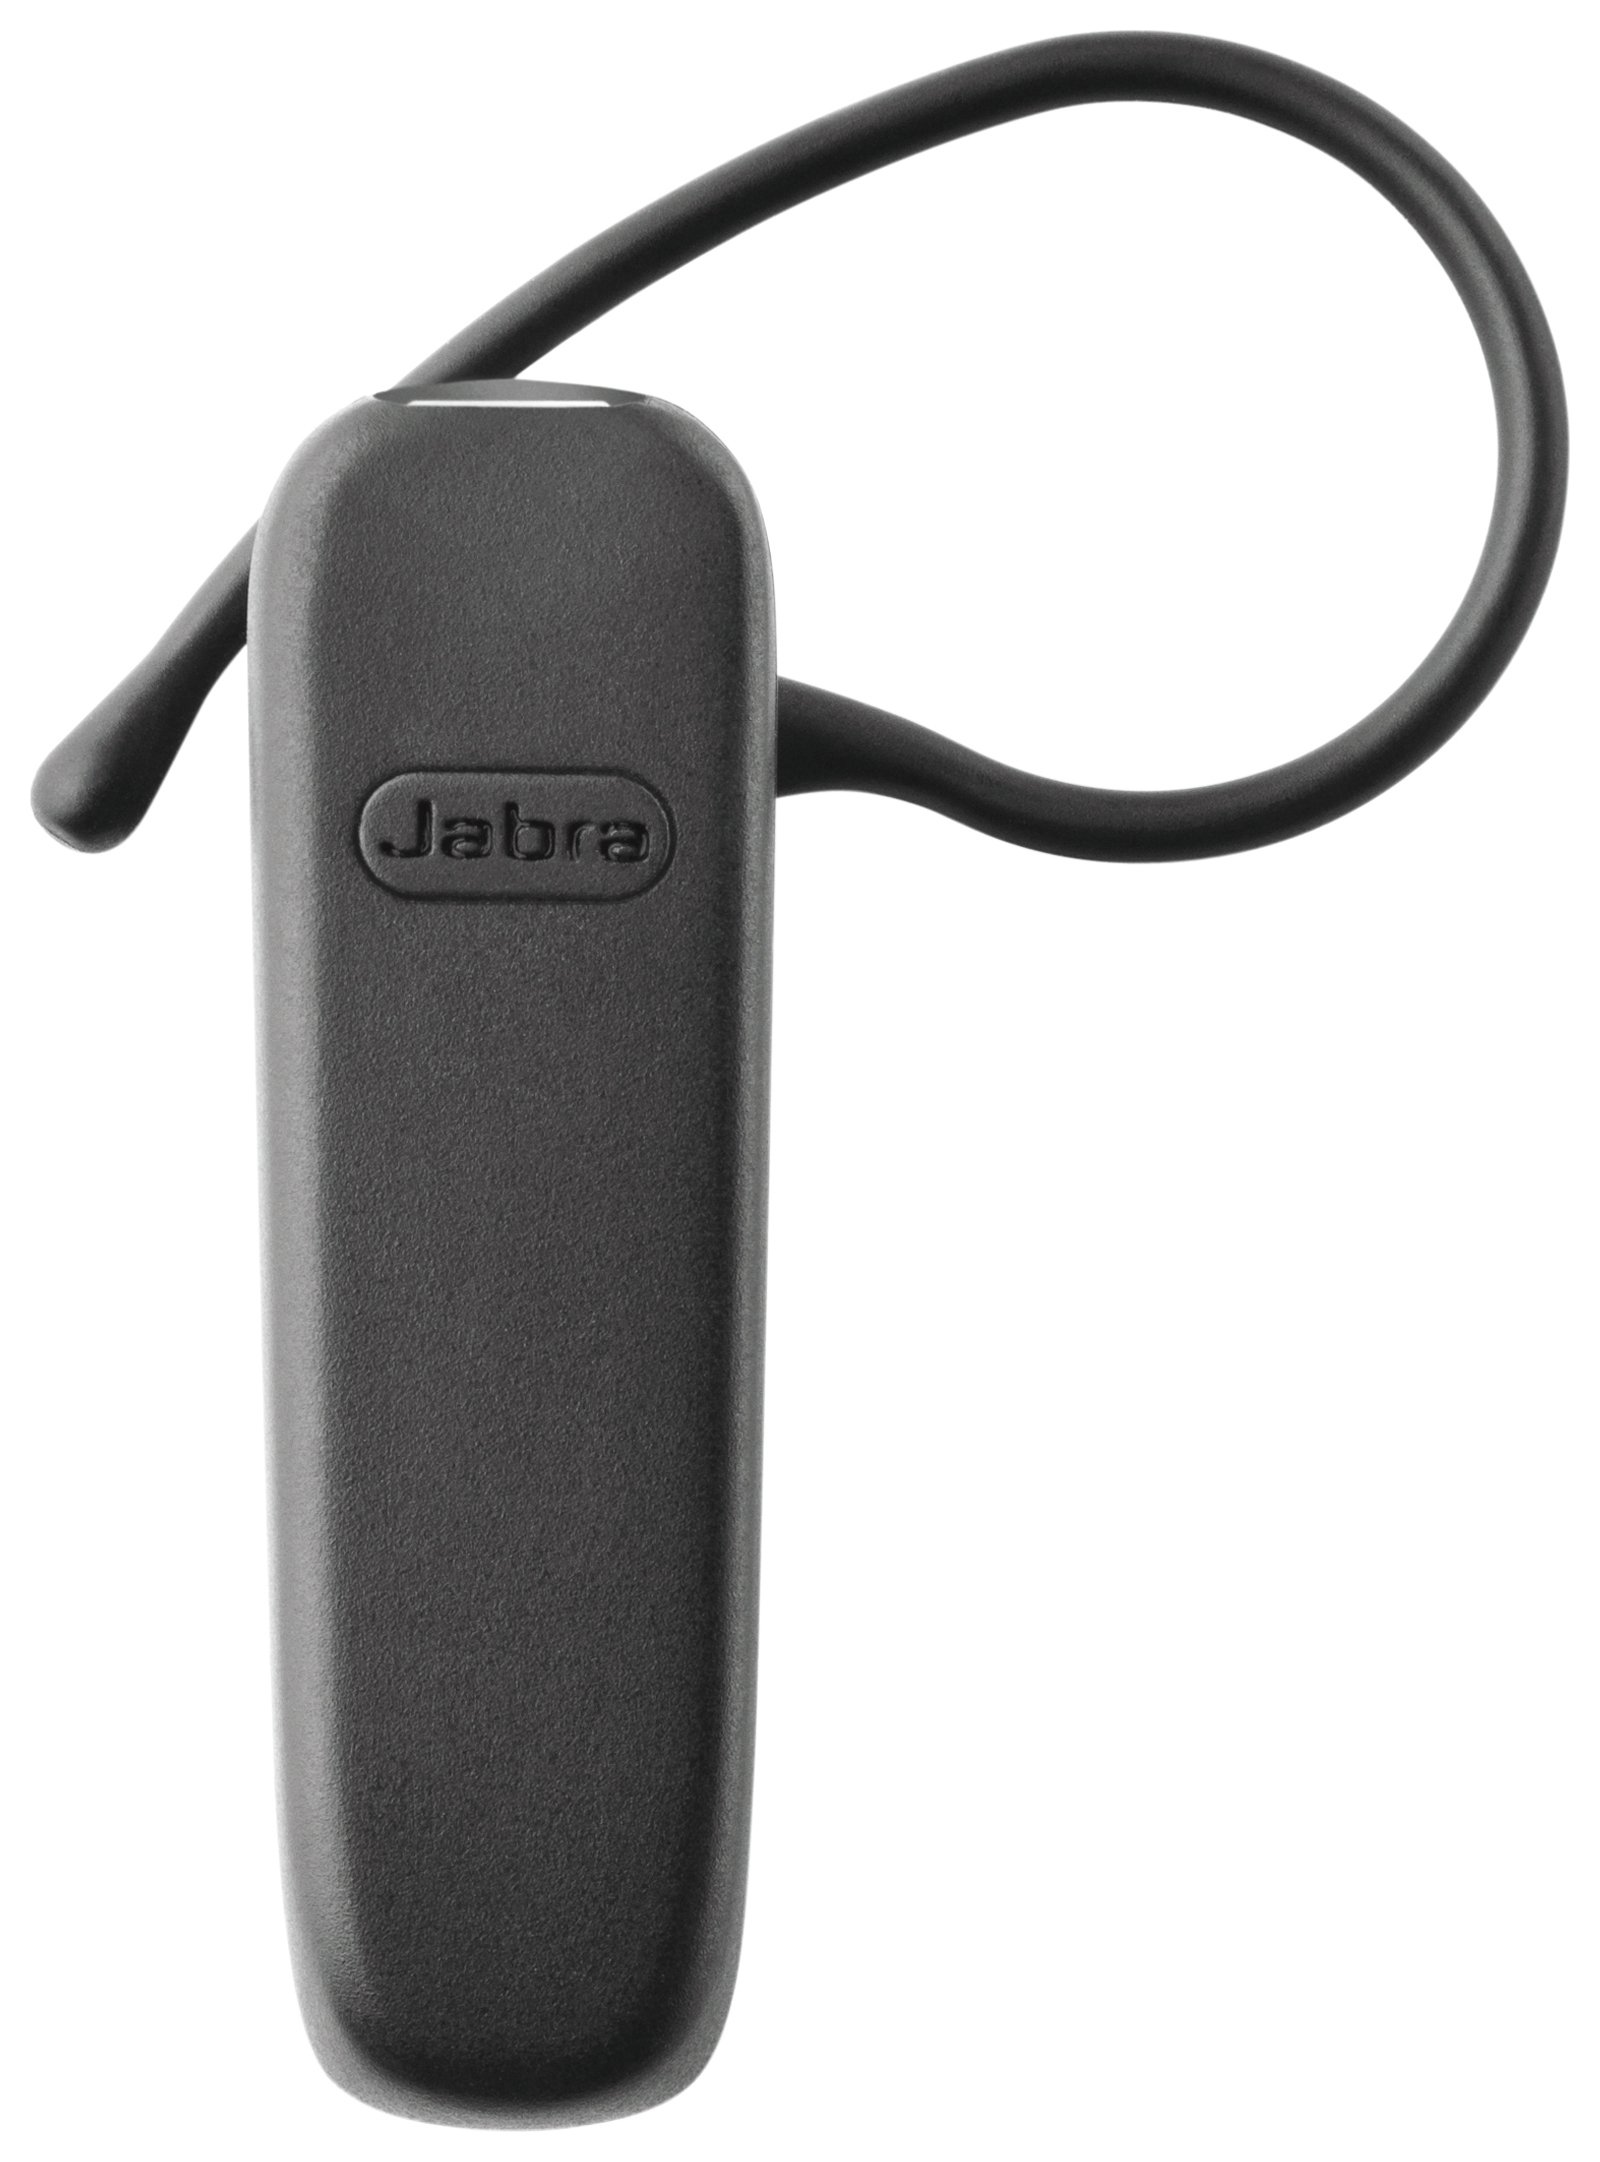 Jabra BT2045 Bluetooth Headset Review